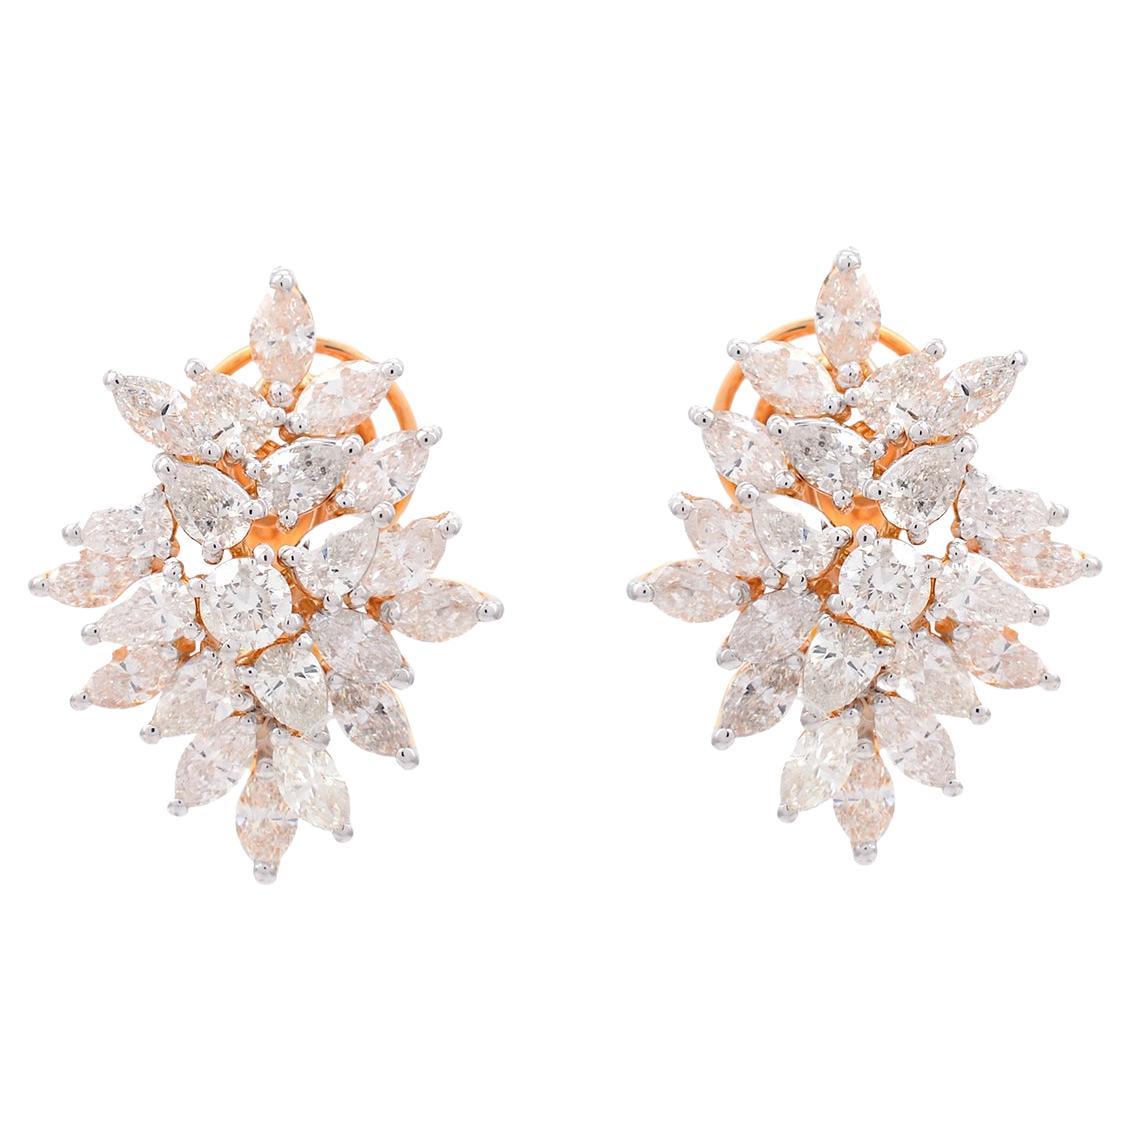 4.65 Carat SI Clarity HI Color Diamond Earrings 14 Karat Rose Gold Fine Jewelry For Sale